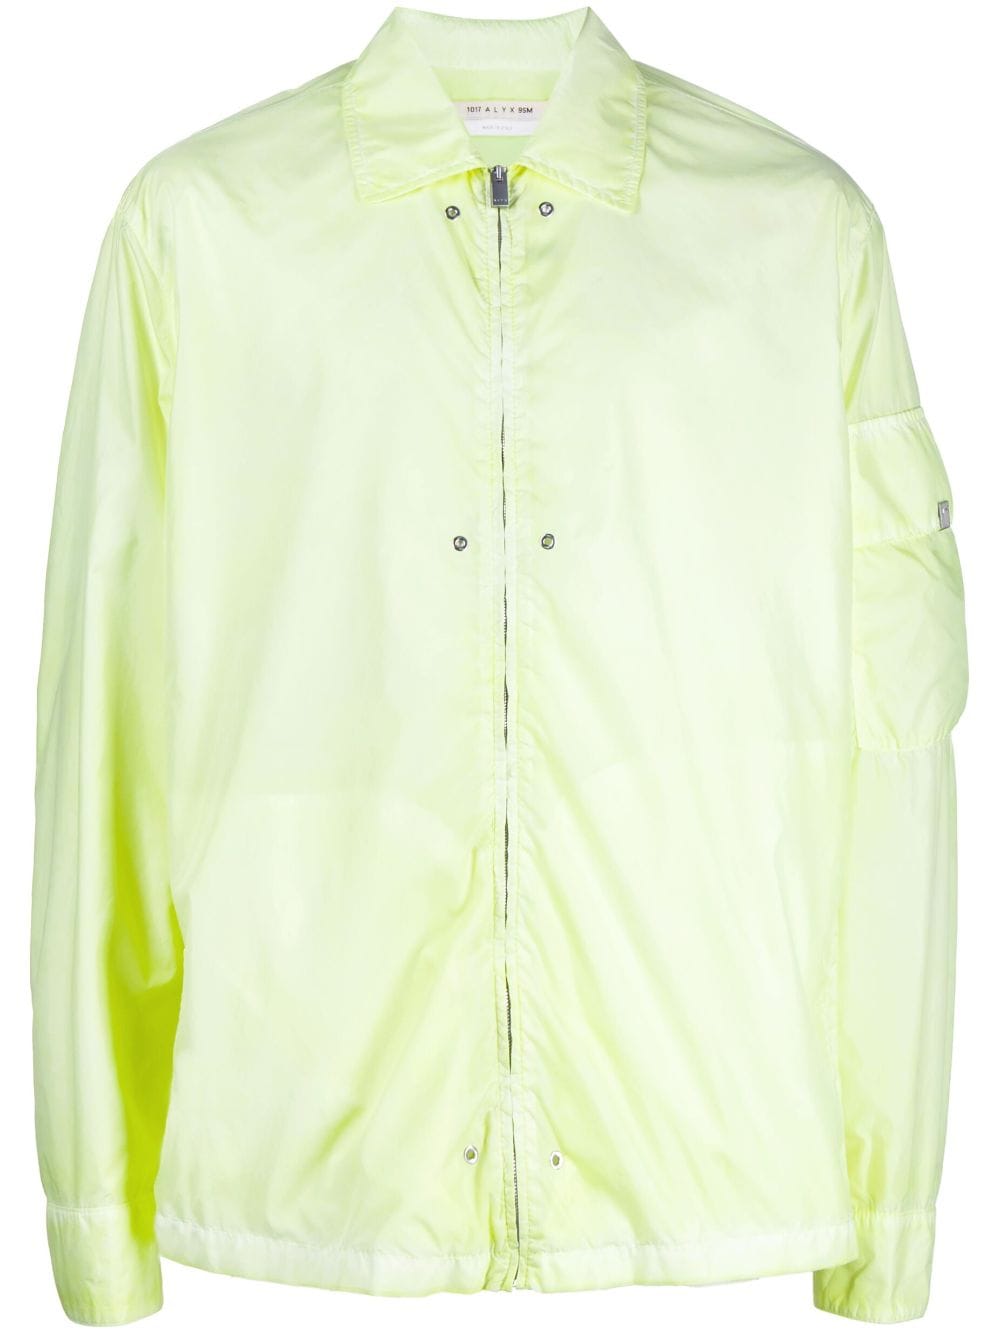 1017 ALYX 9SM zip-up lightweight jacket - Green von 1017 ALYX 9SM